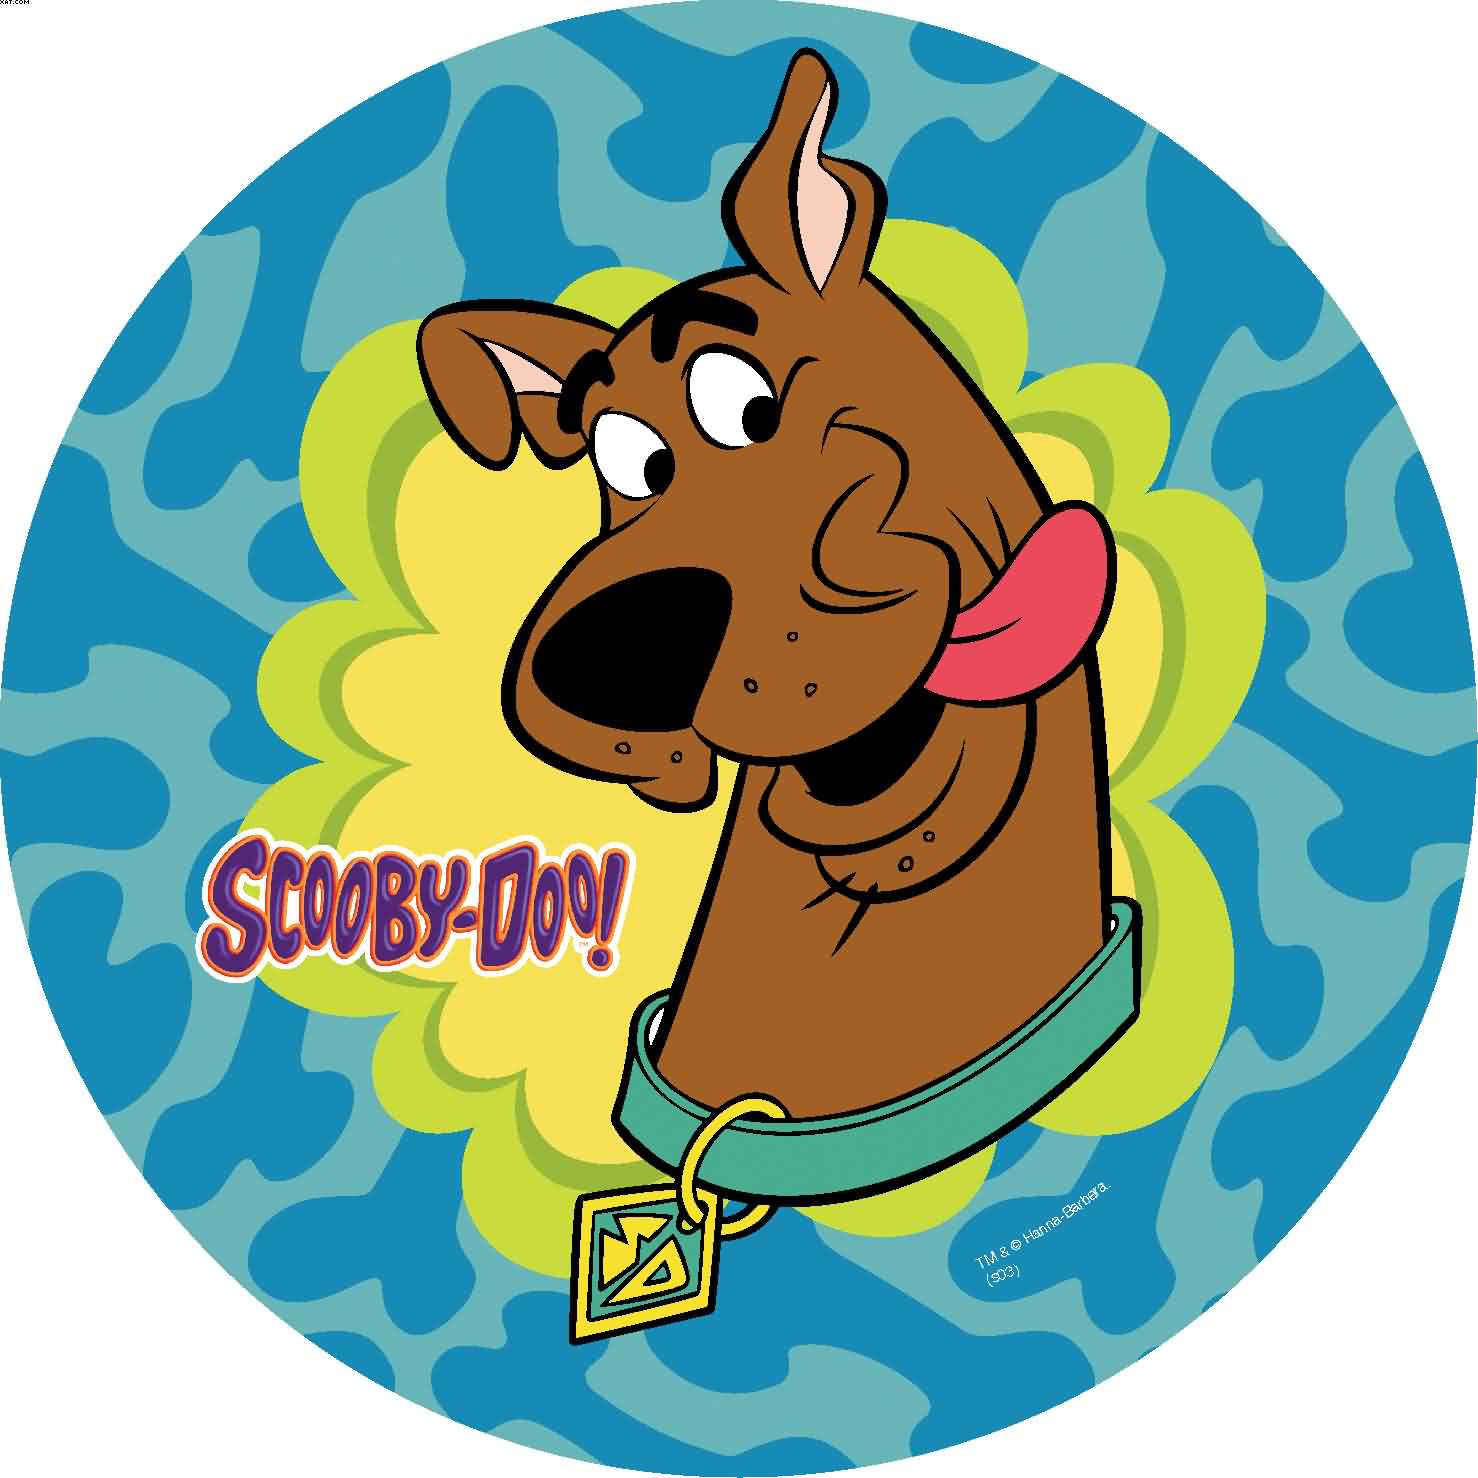 20130406181351!Scooby-Doo.jpg